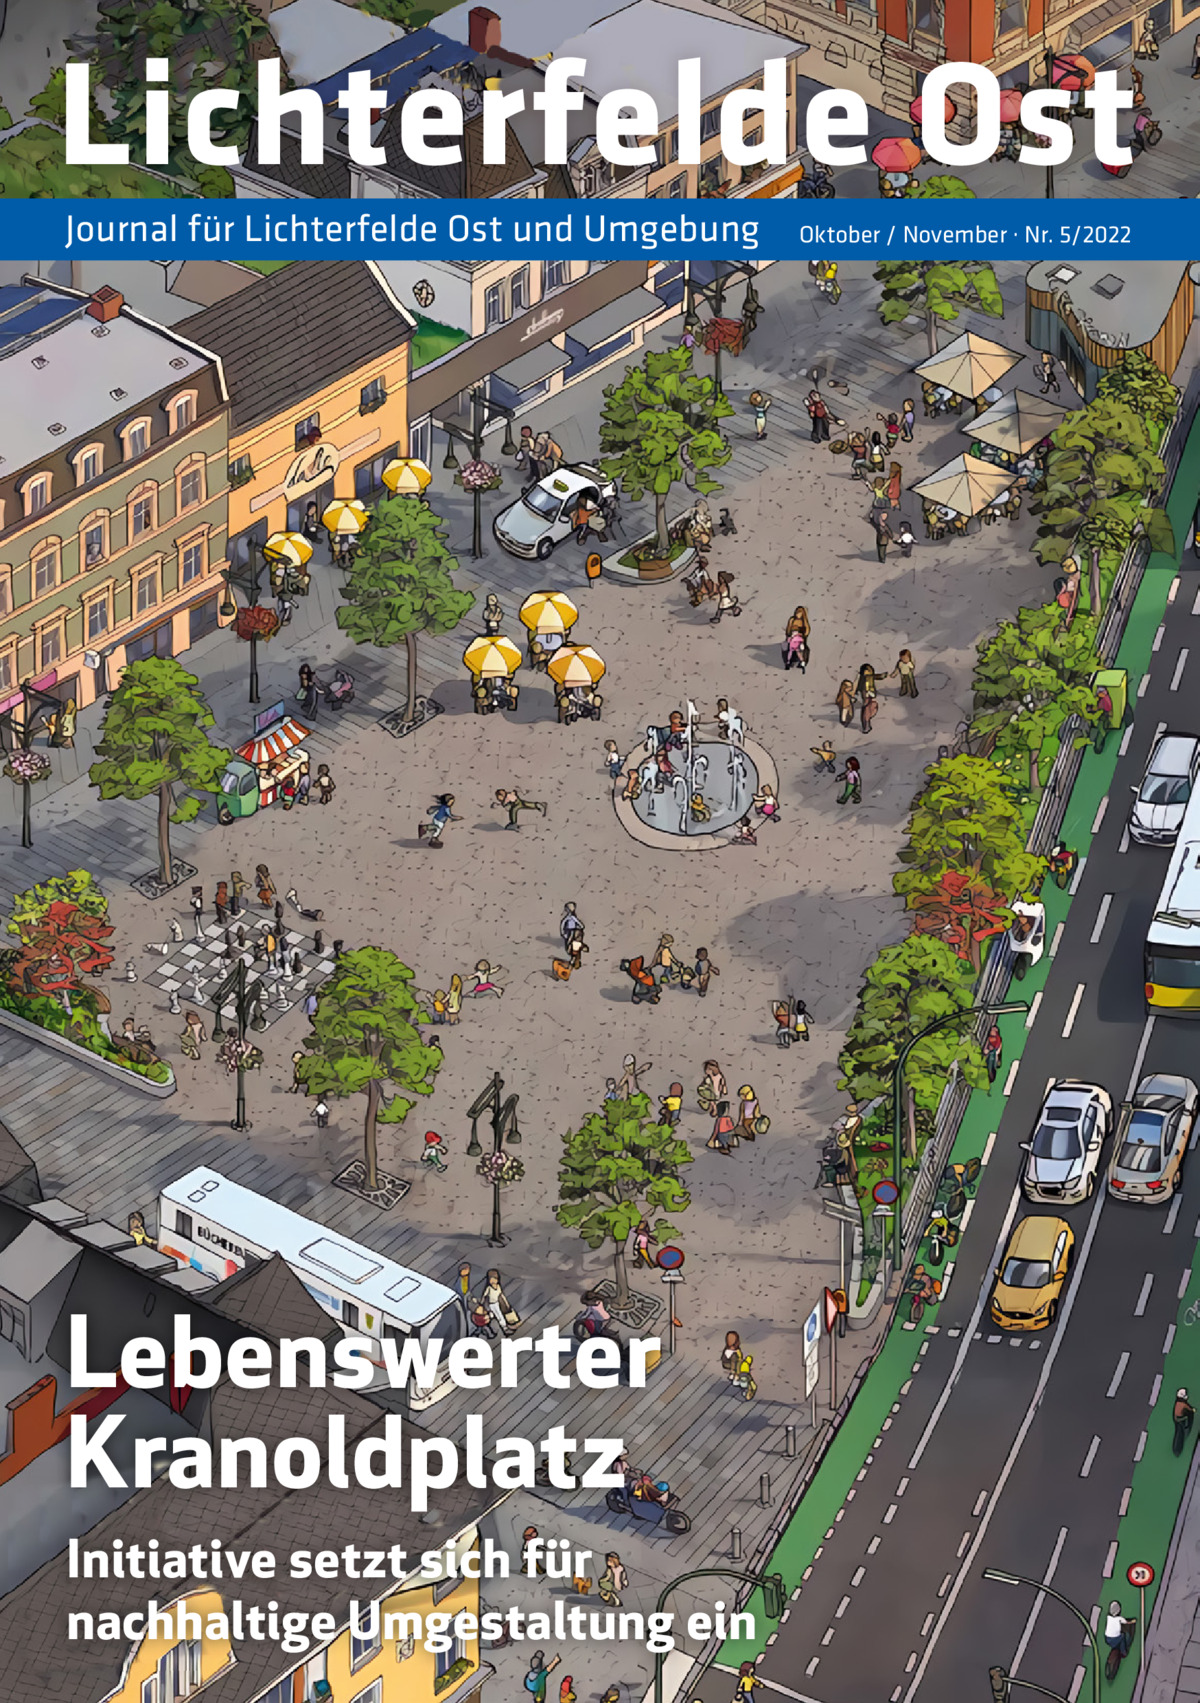 Lichterfelde Ost Journal für Lichterfelde Ost und Umgebung  Lebenswerter Kranoldplatz Initiative setzt sich für nachhaltige Umgestaltung ein  Oktober / November · Nr. 5/2022